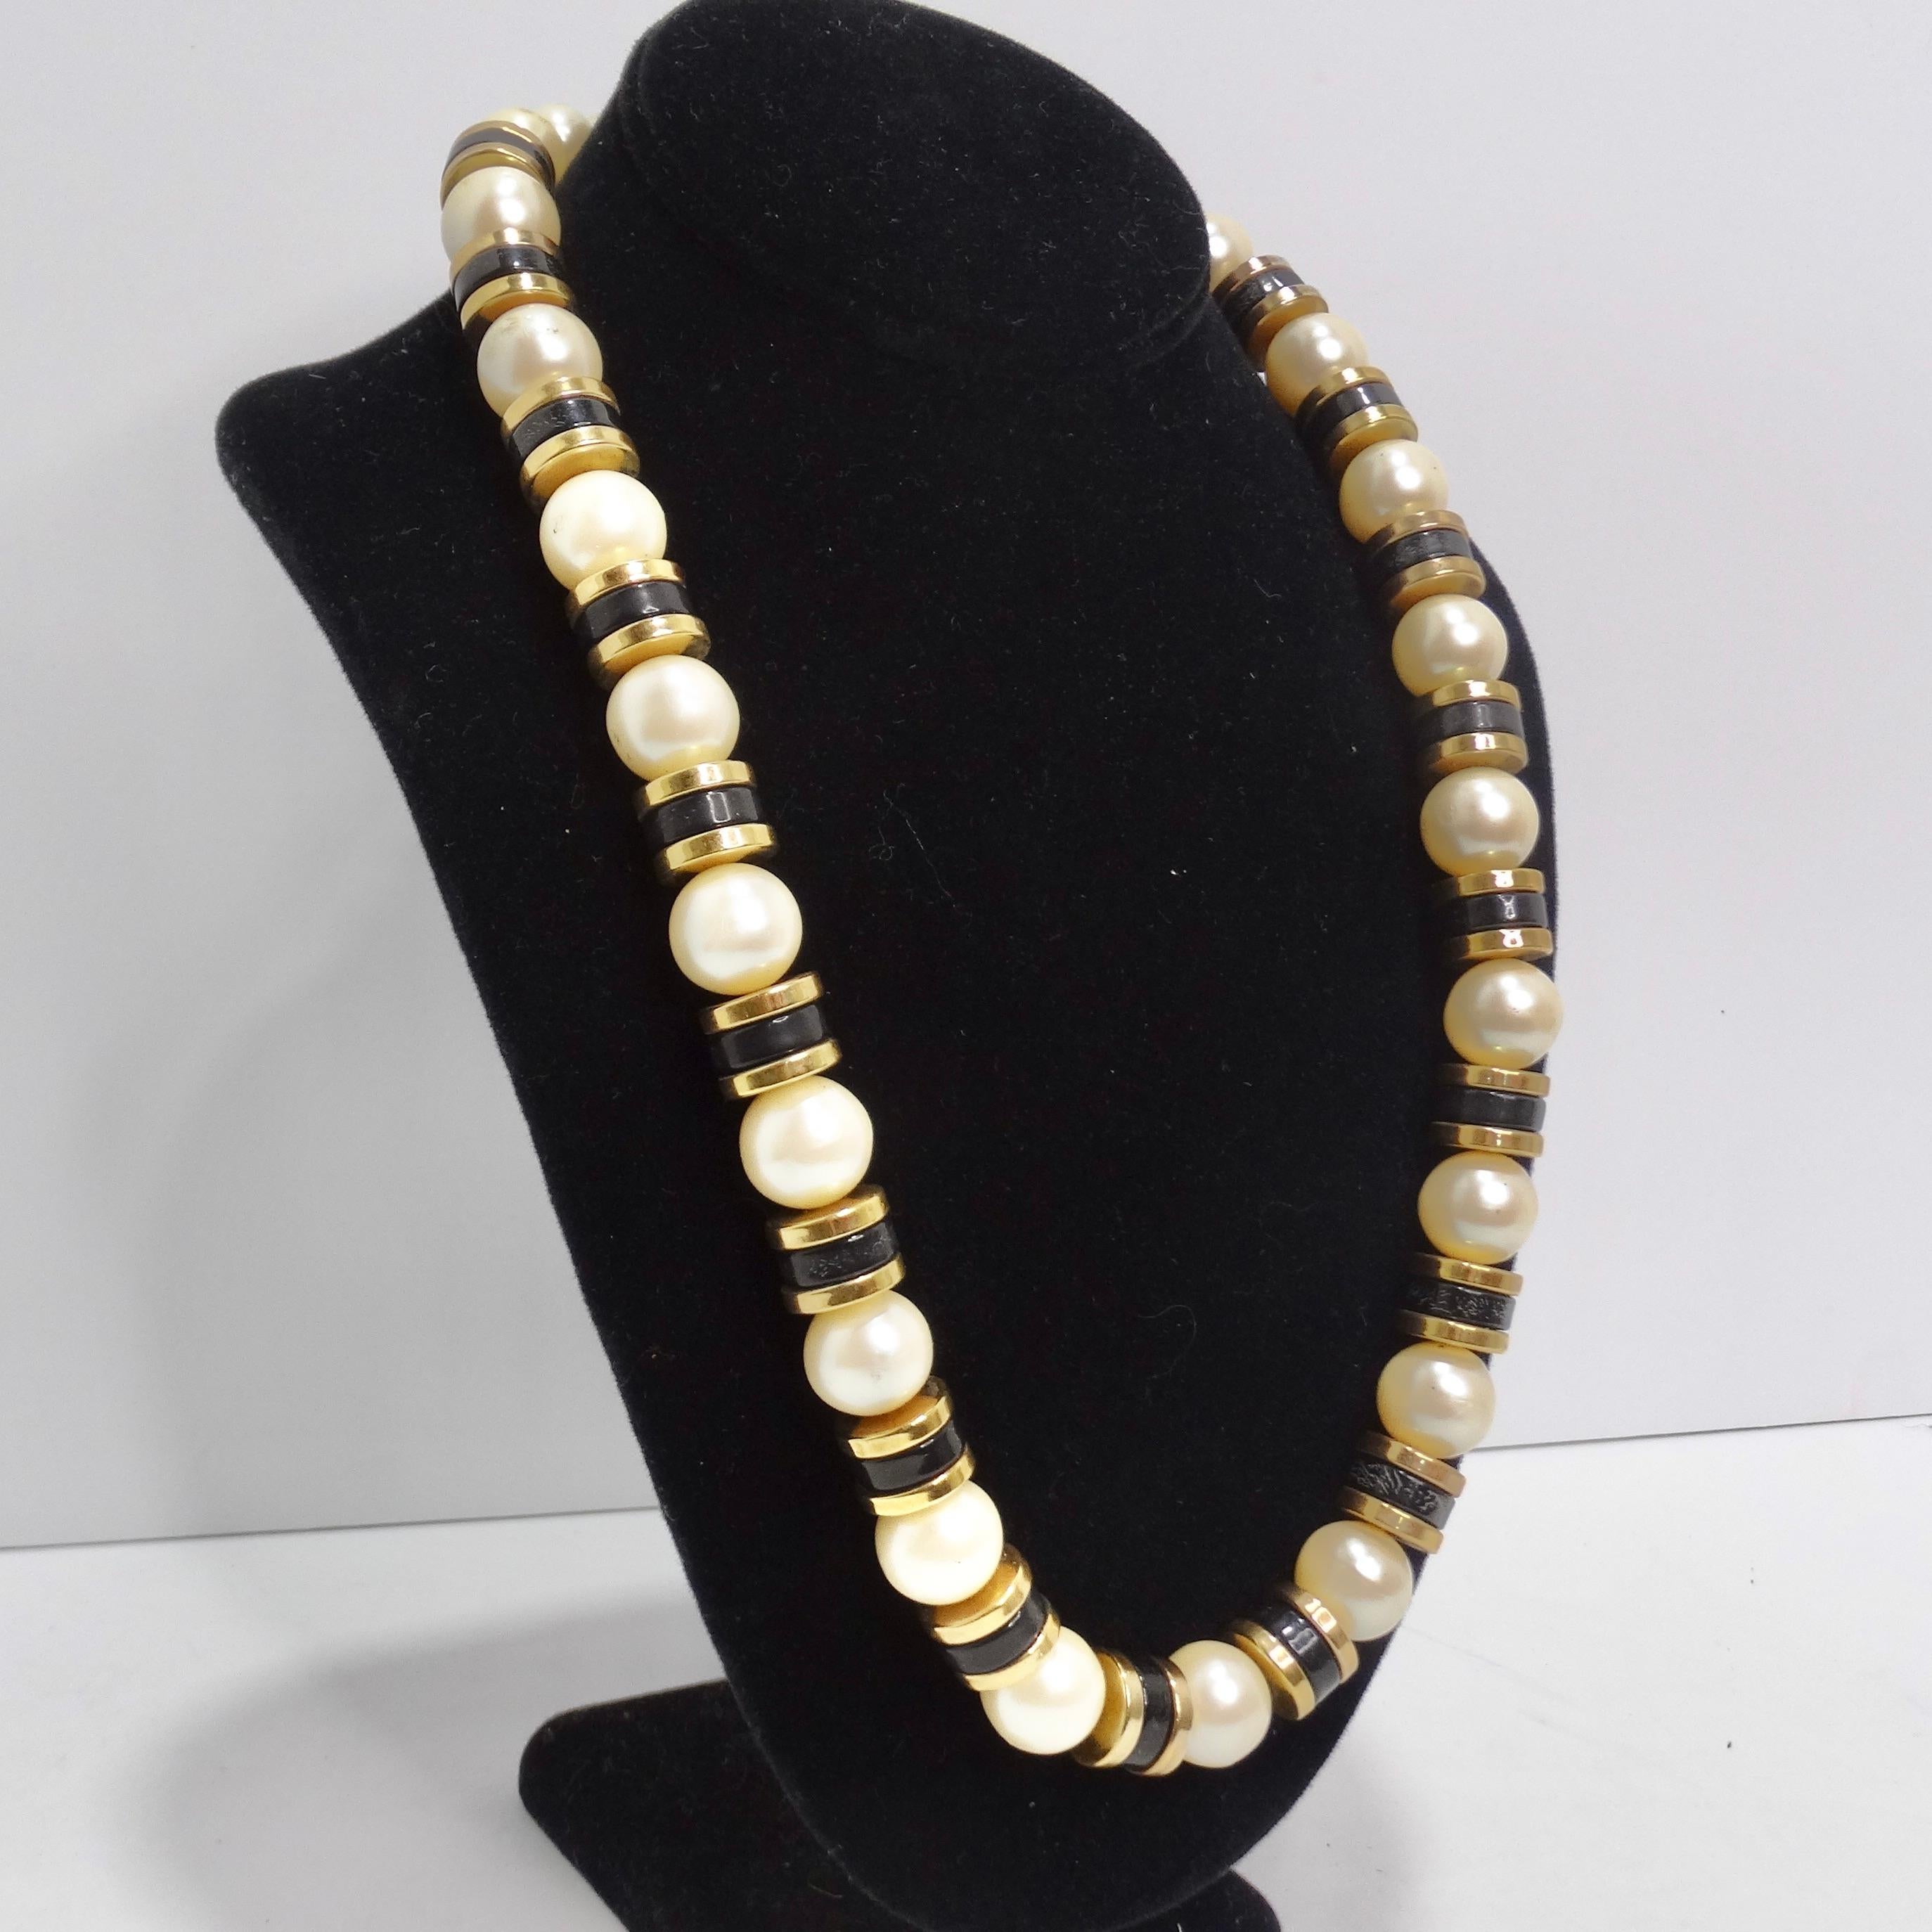 Tauchen Sie ein in die Welt der Vintage-Eleganz mit unserer atemberaubenden 1970er Synthetik-Perlenkette. Diese Halskette aus großen synthetischen Perlen und kontrastierenden schwarzen und vergoldeten Perlen ist ein vielseitiges Accessoire, mit dem